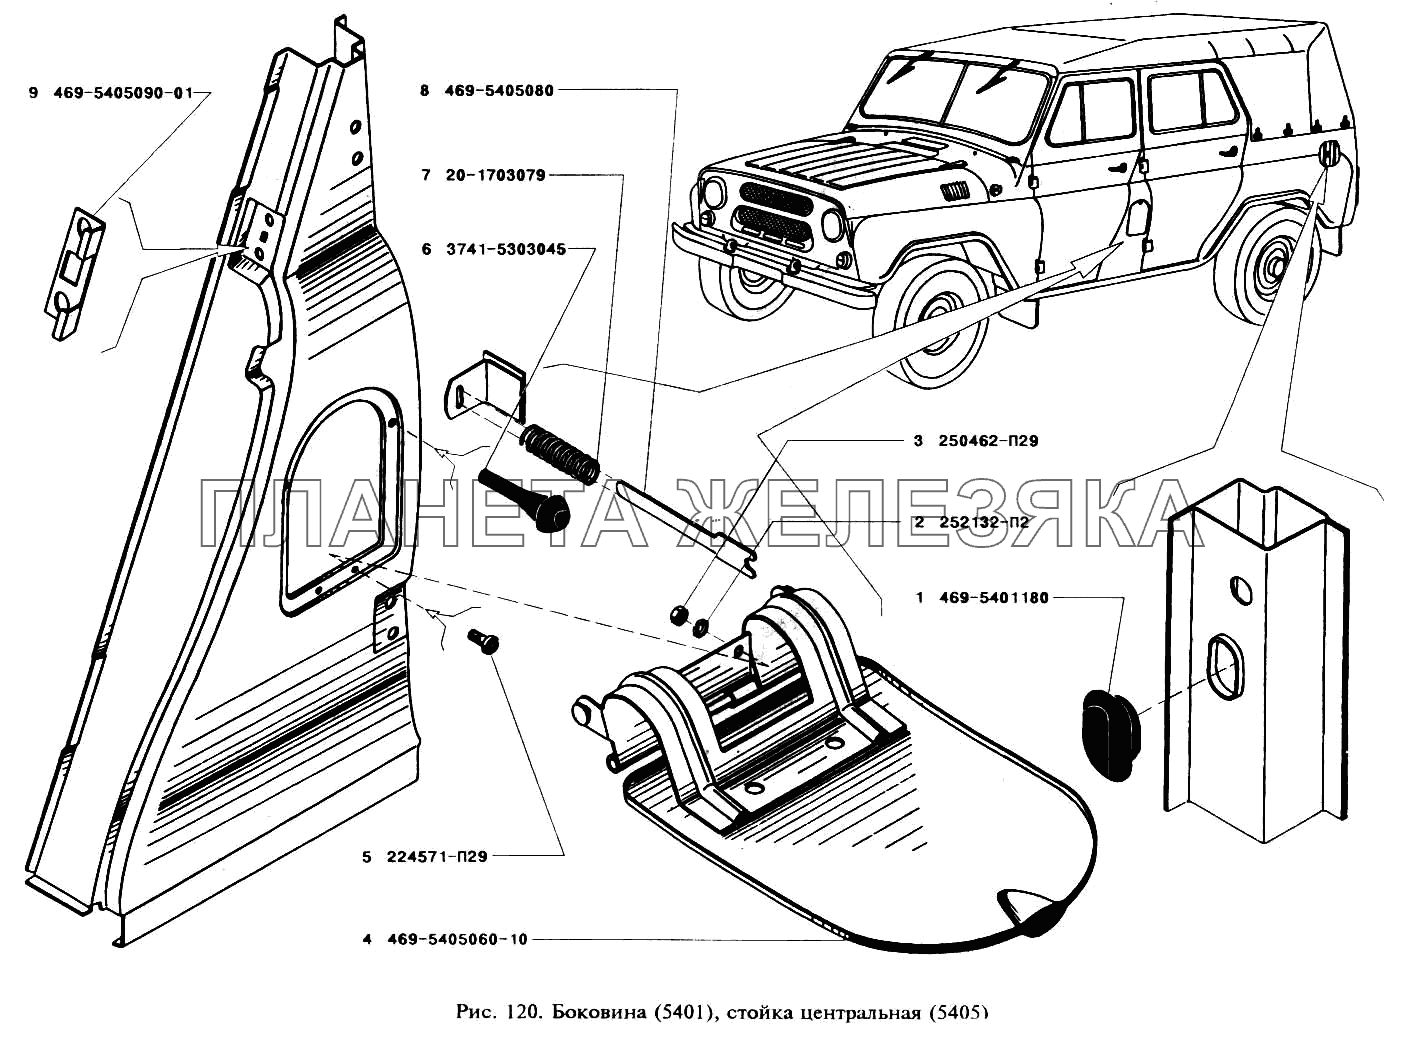 Боковина и стойка центральная УАЗ-3151